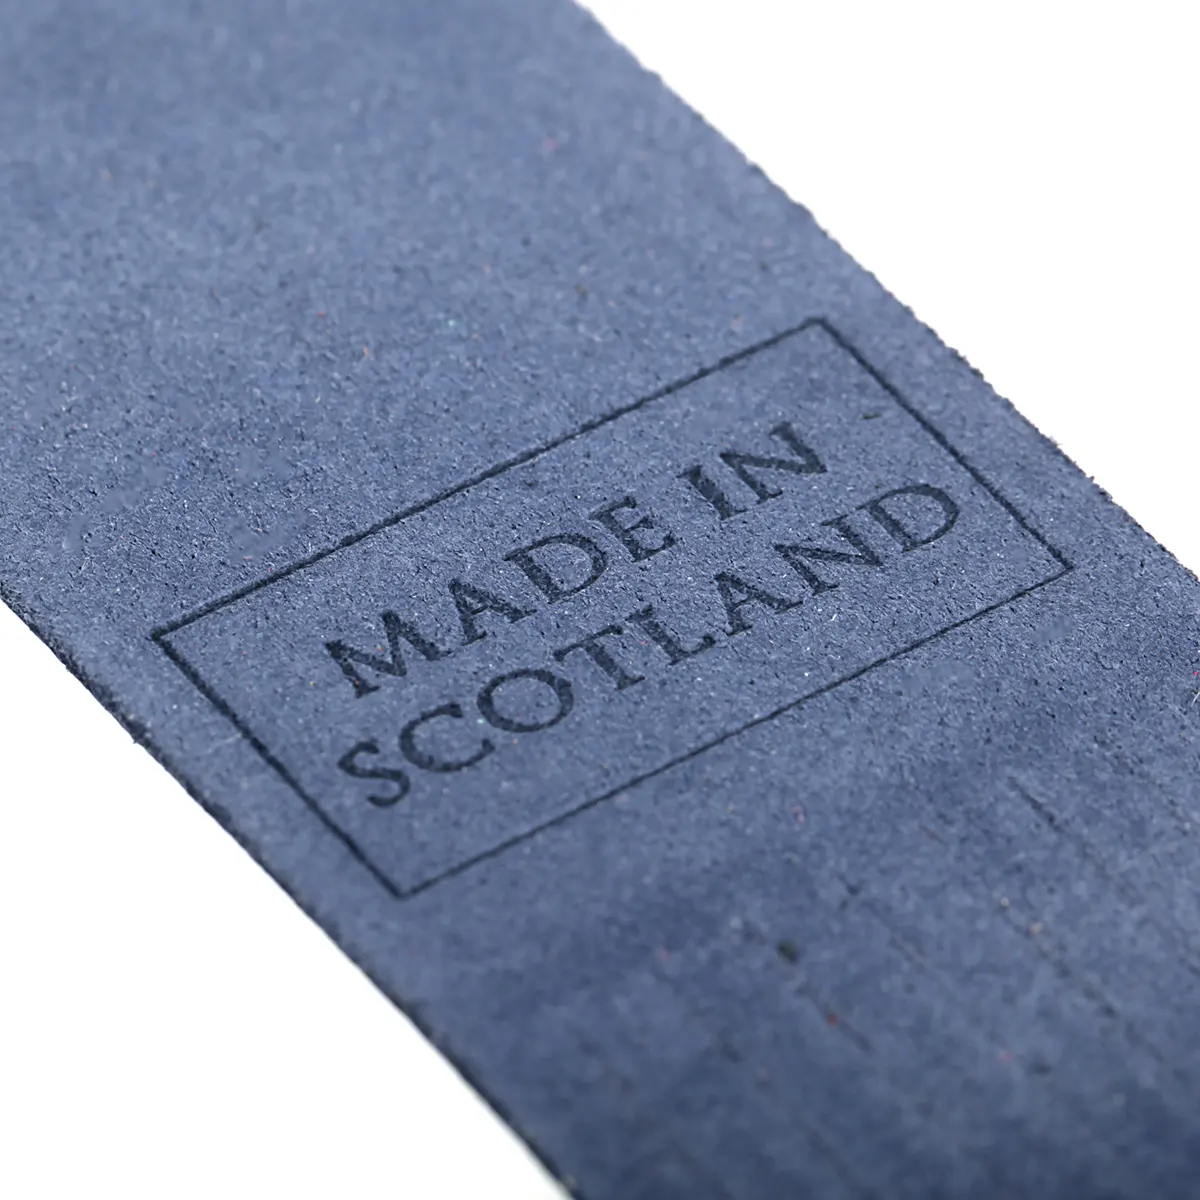 Glasgow - Lesezeichen aus Leder in Blau - Made in Scotland